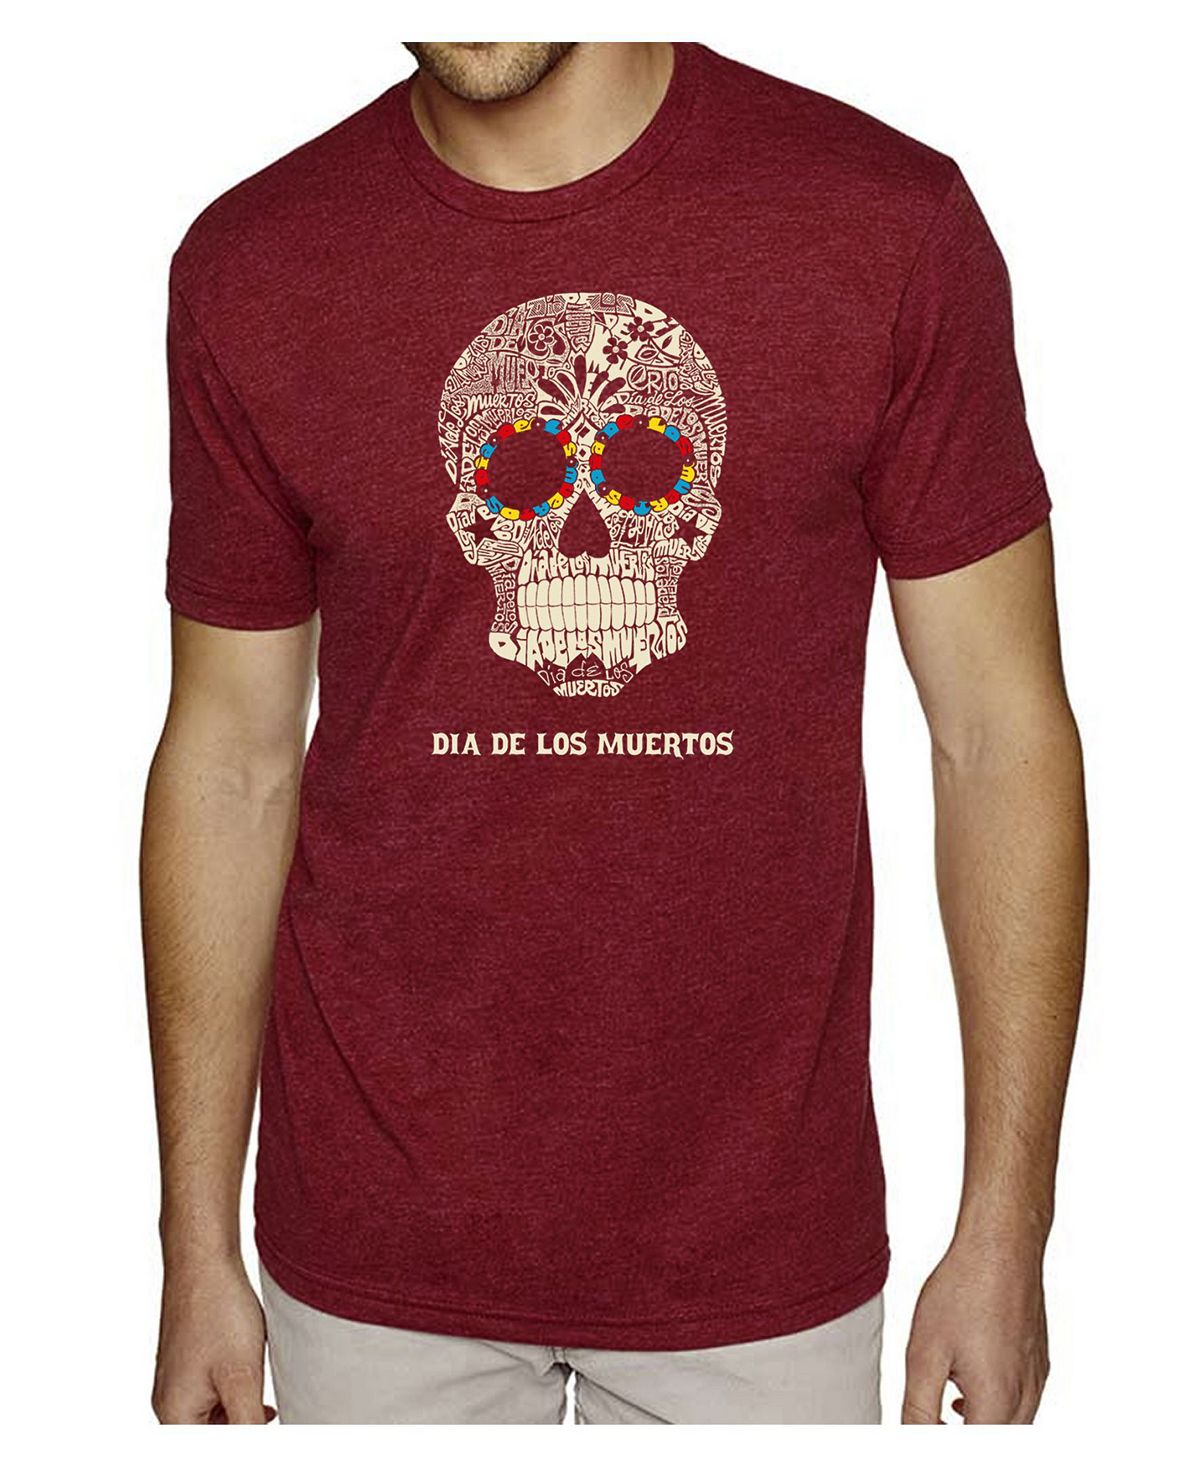 Мужская футболка премиум-класса word art - dia de los muertos LA Pop Art мужская футболка сахарный череп с цветами l черный